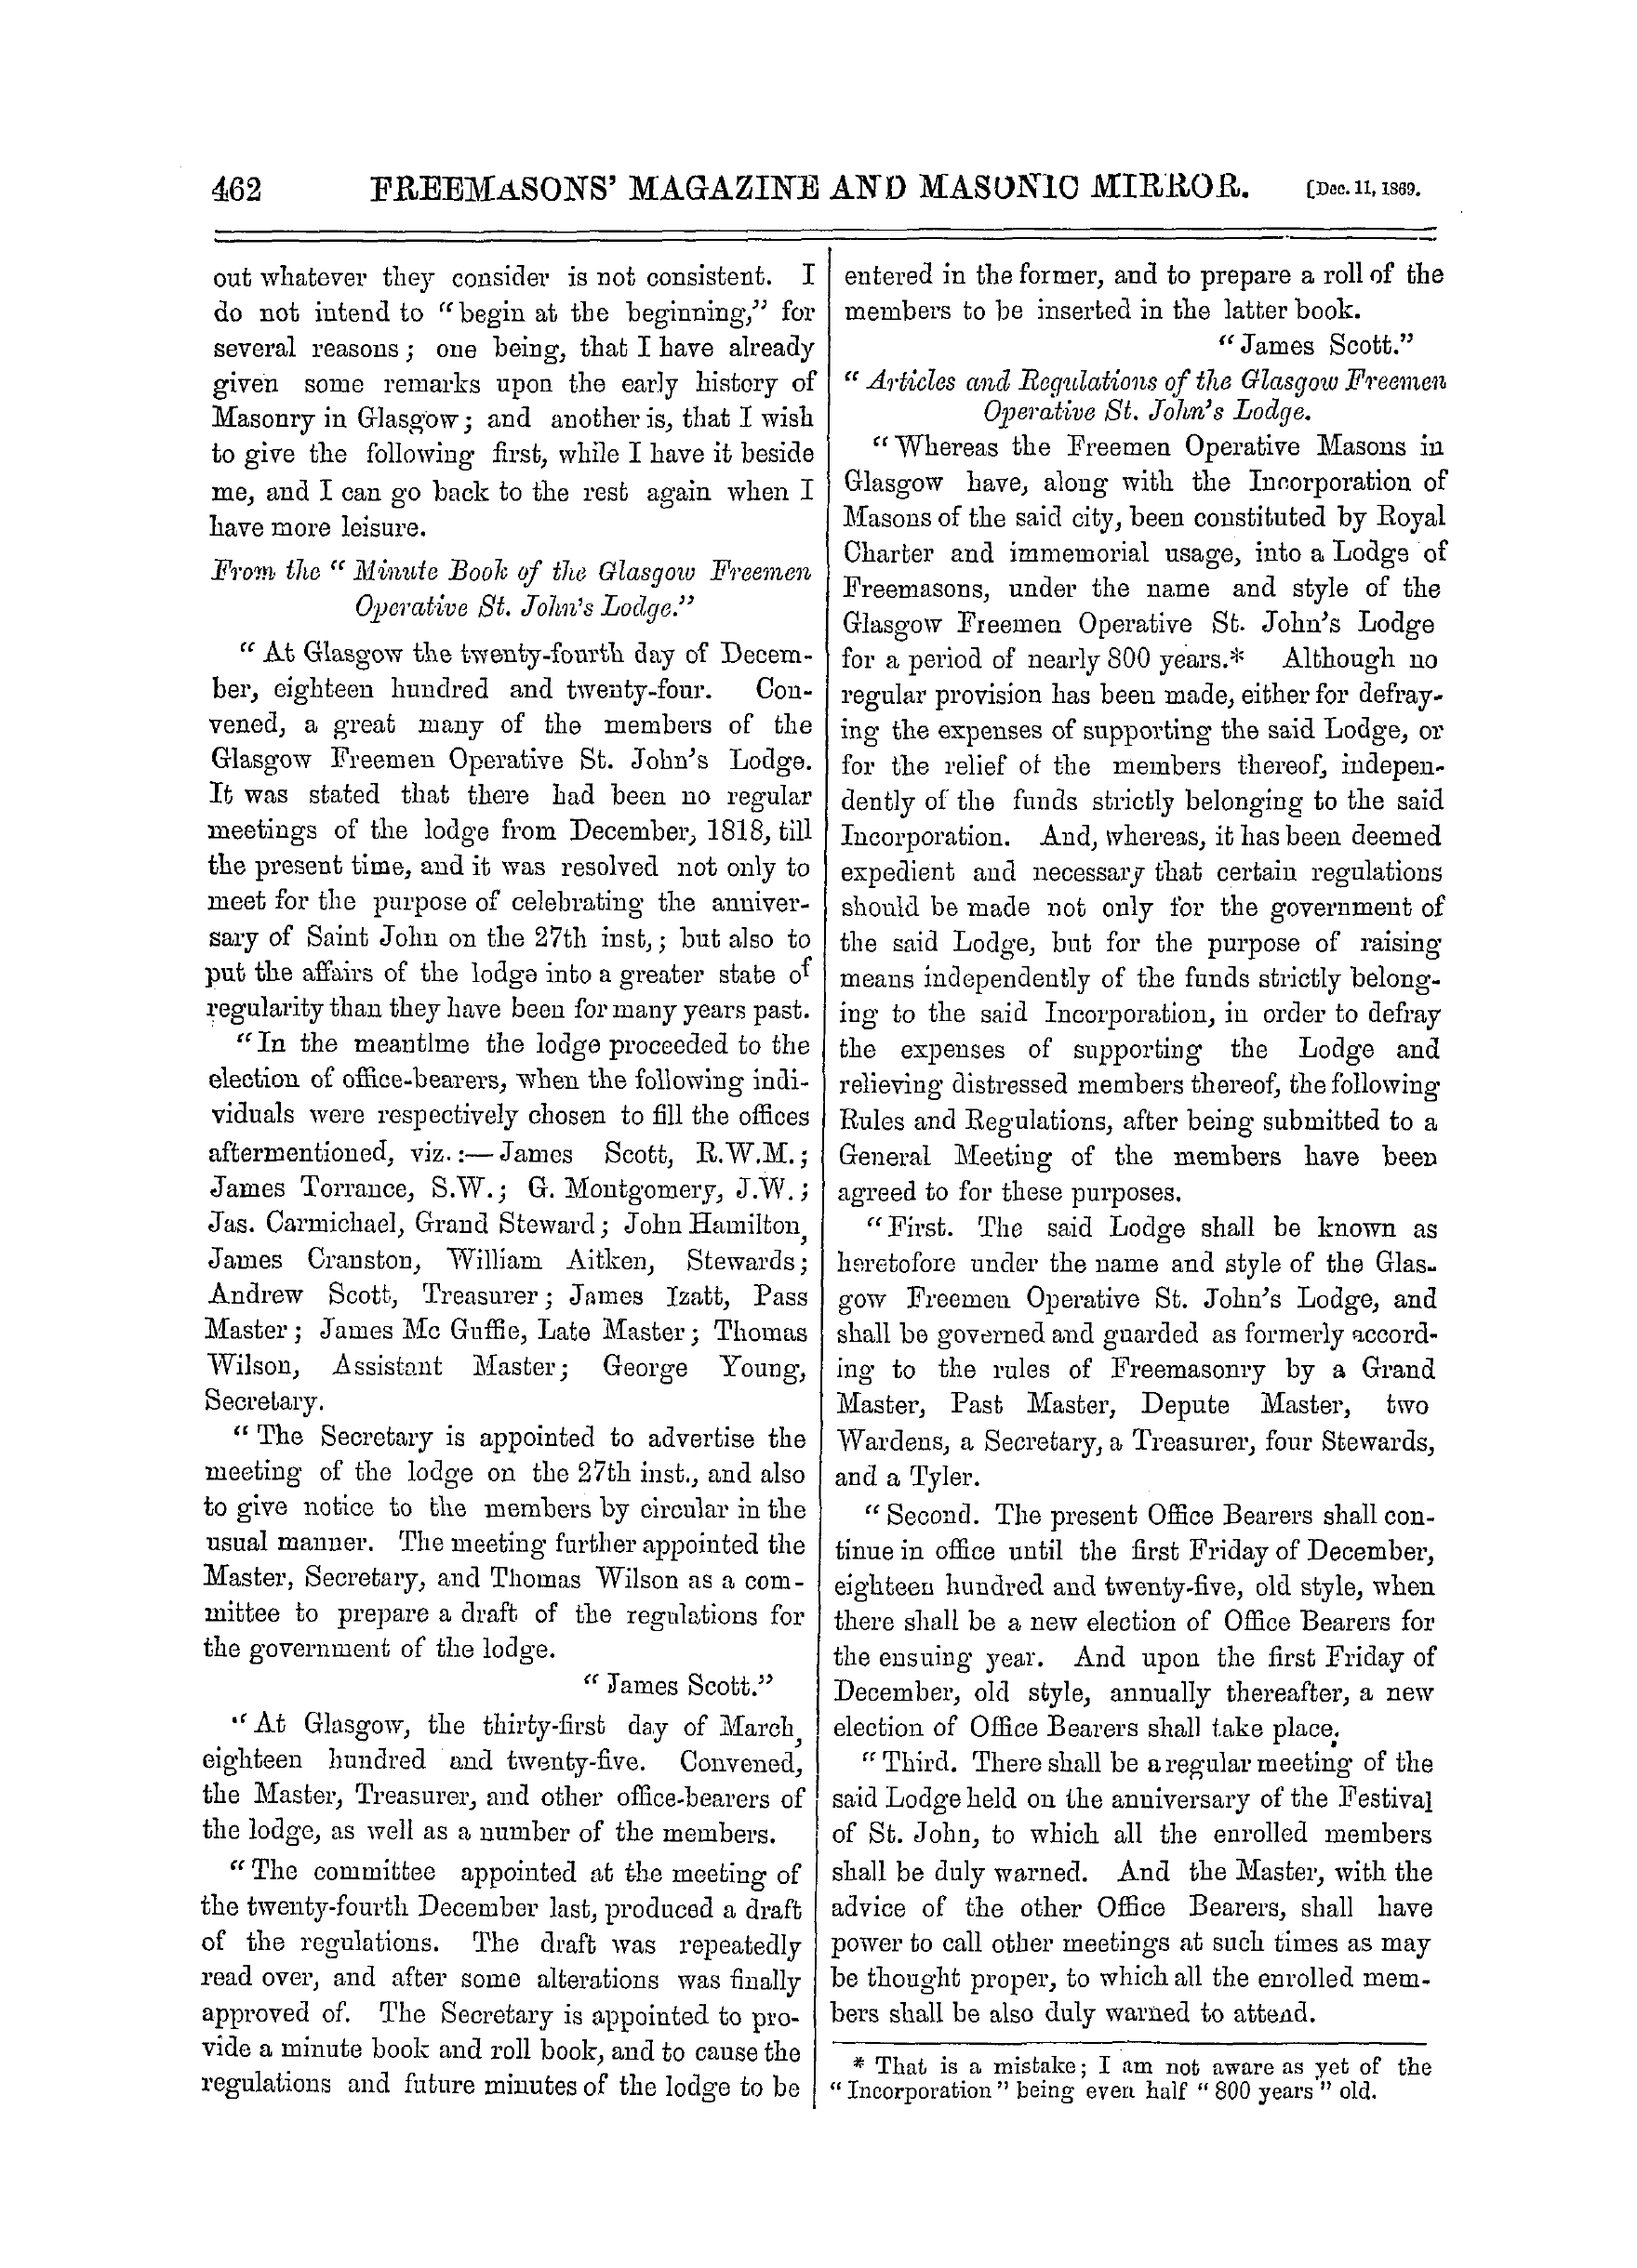 The Freemasons' Monthly Magazine: 1869-12-11: 2